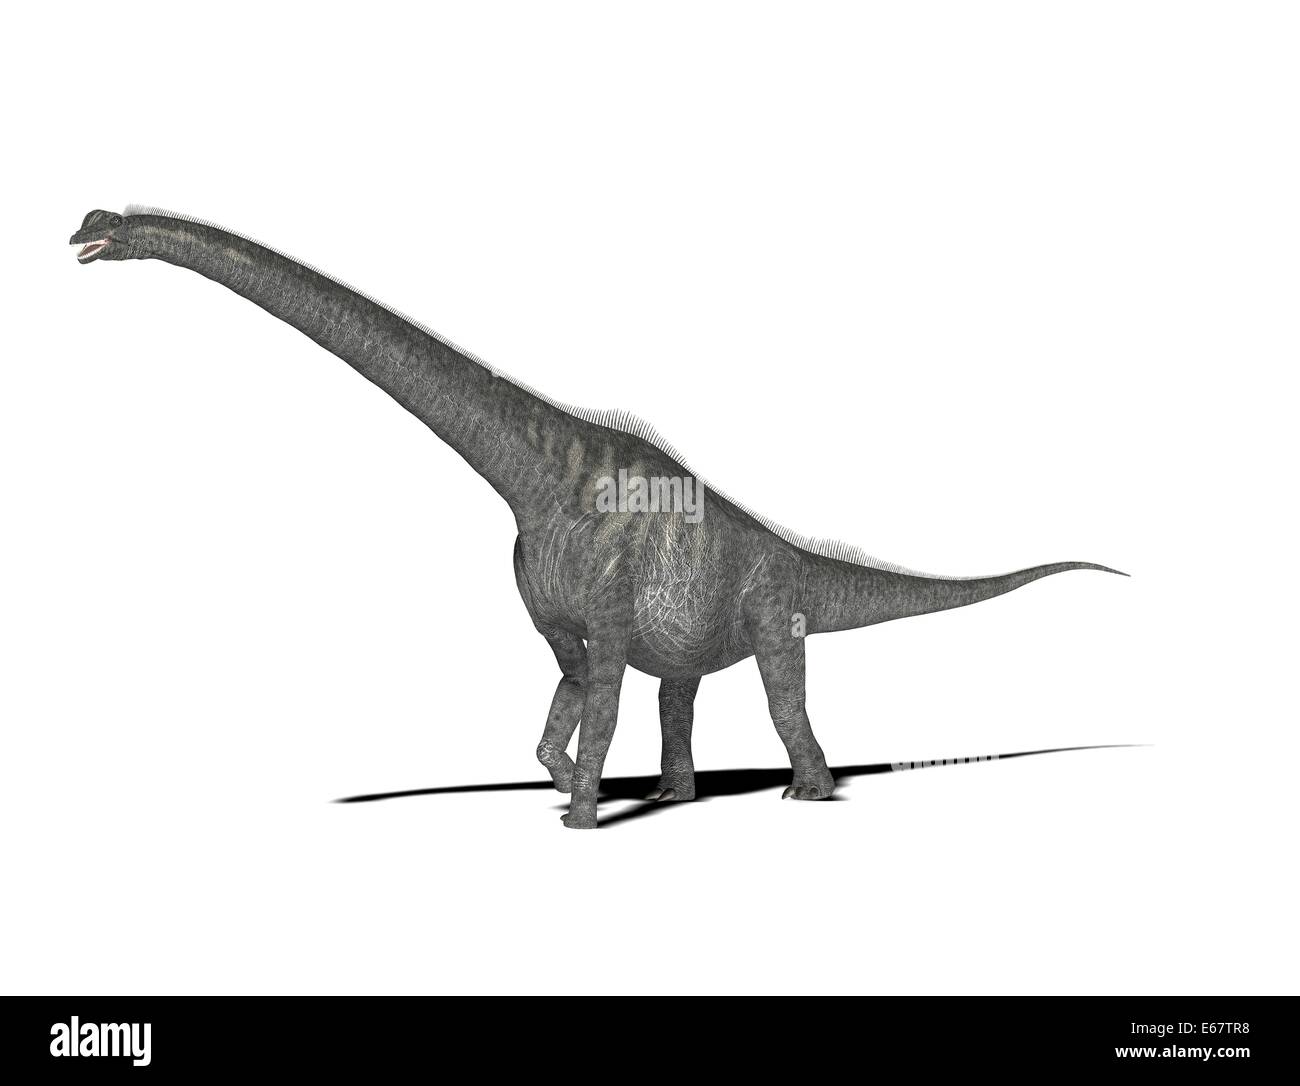 Le Sauroposeidon avait Dinosaurier / Le Sauroposeidon avait dinosaure Banque D'Images